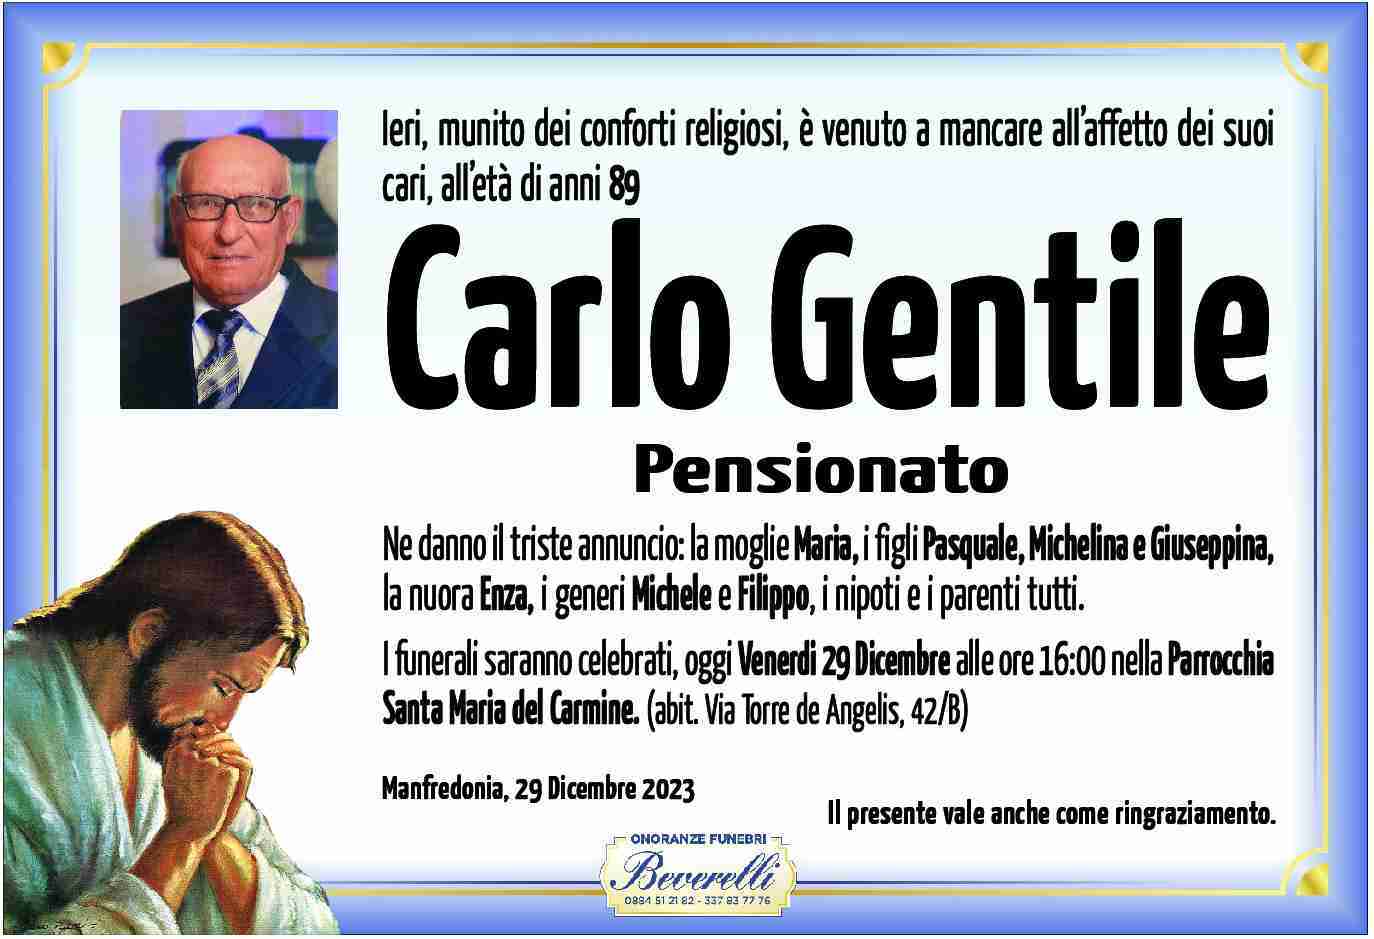 Carlo Gentile